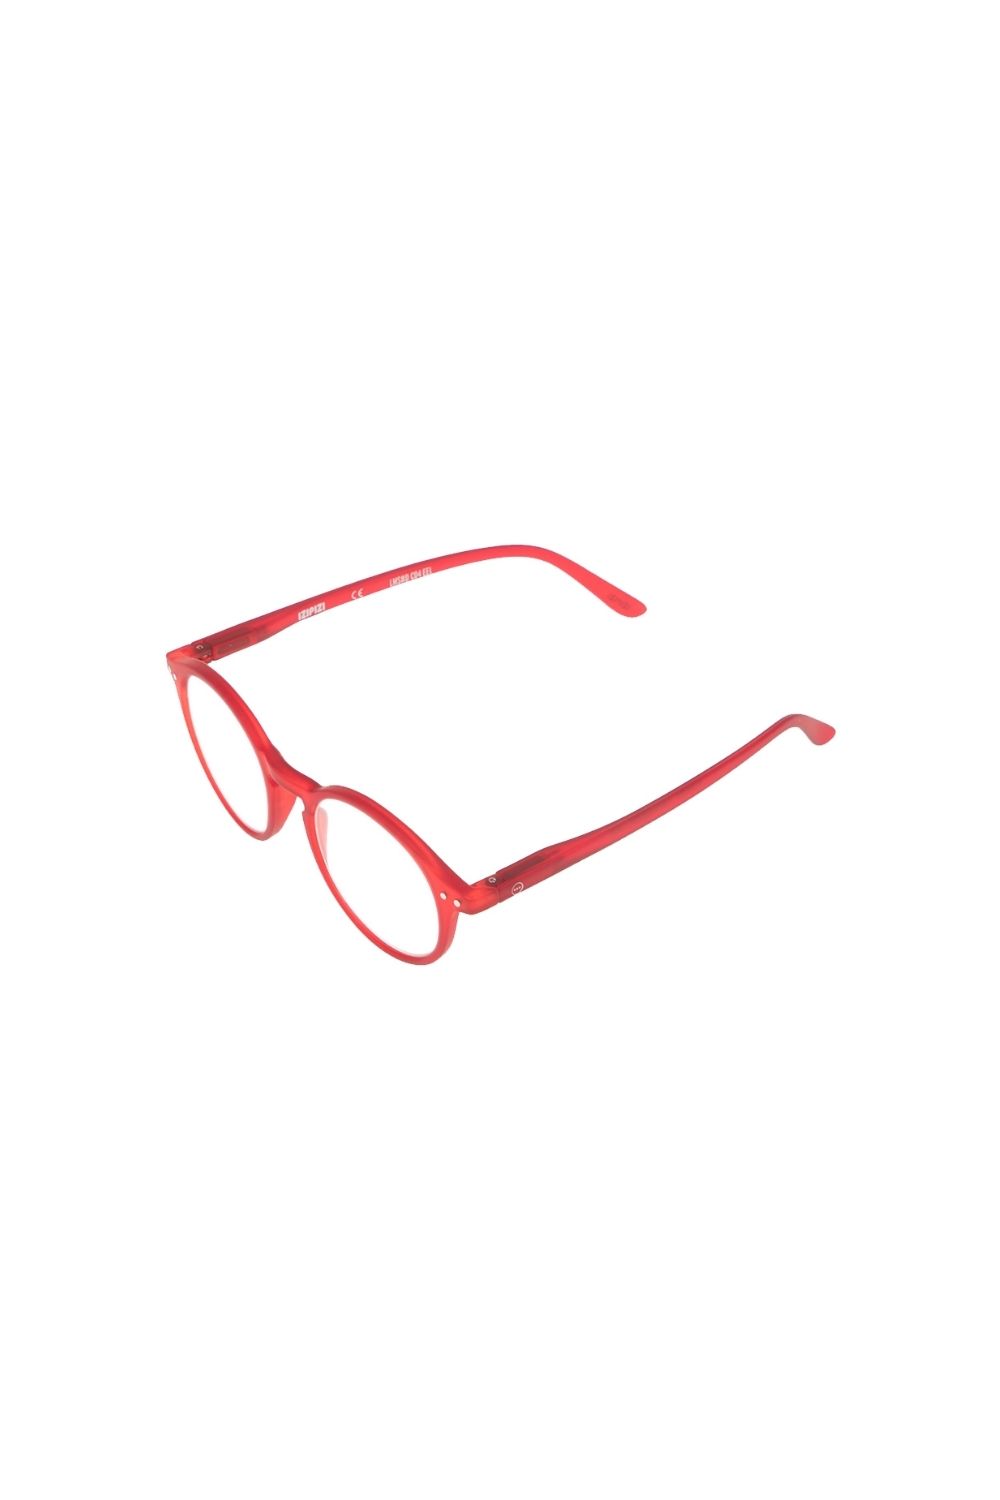 Γυναικεία/Αξεσουάρ/Γυαλιά/Οράσεως IZIPIZI - Unisex γυαλιά οράσεως IZIPIZI READING D κόκκινα